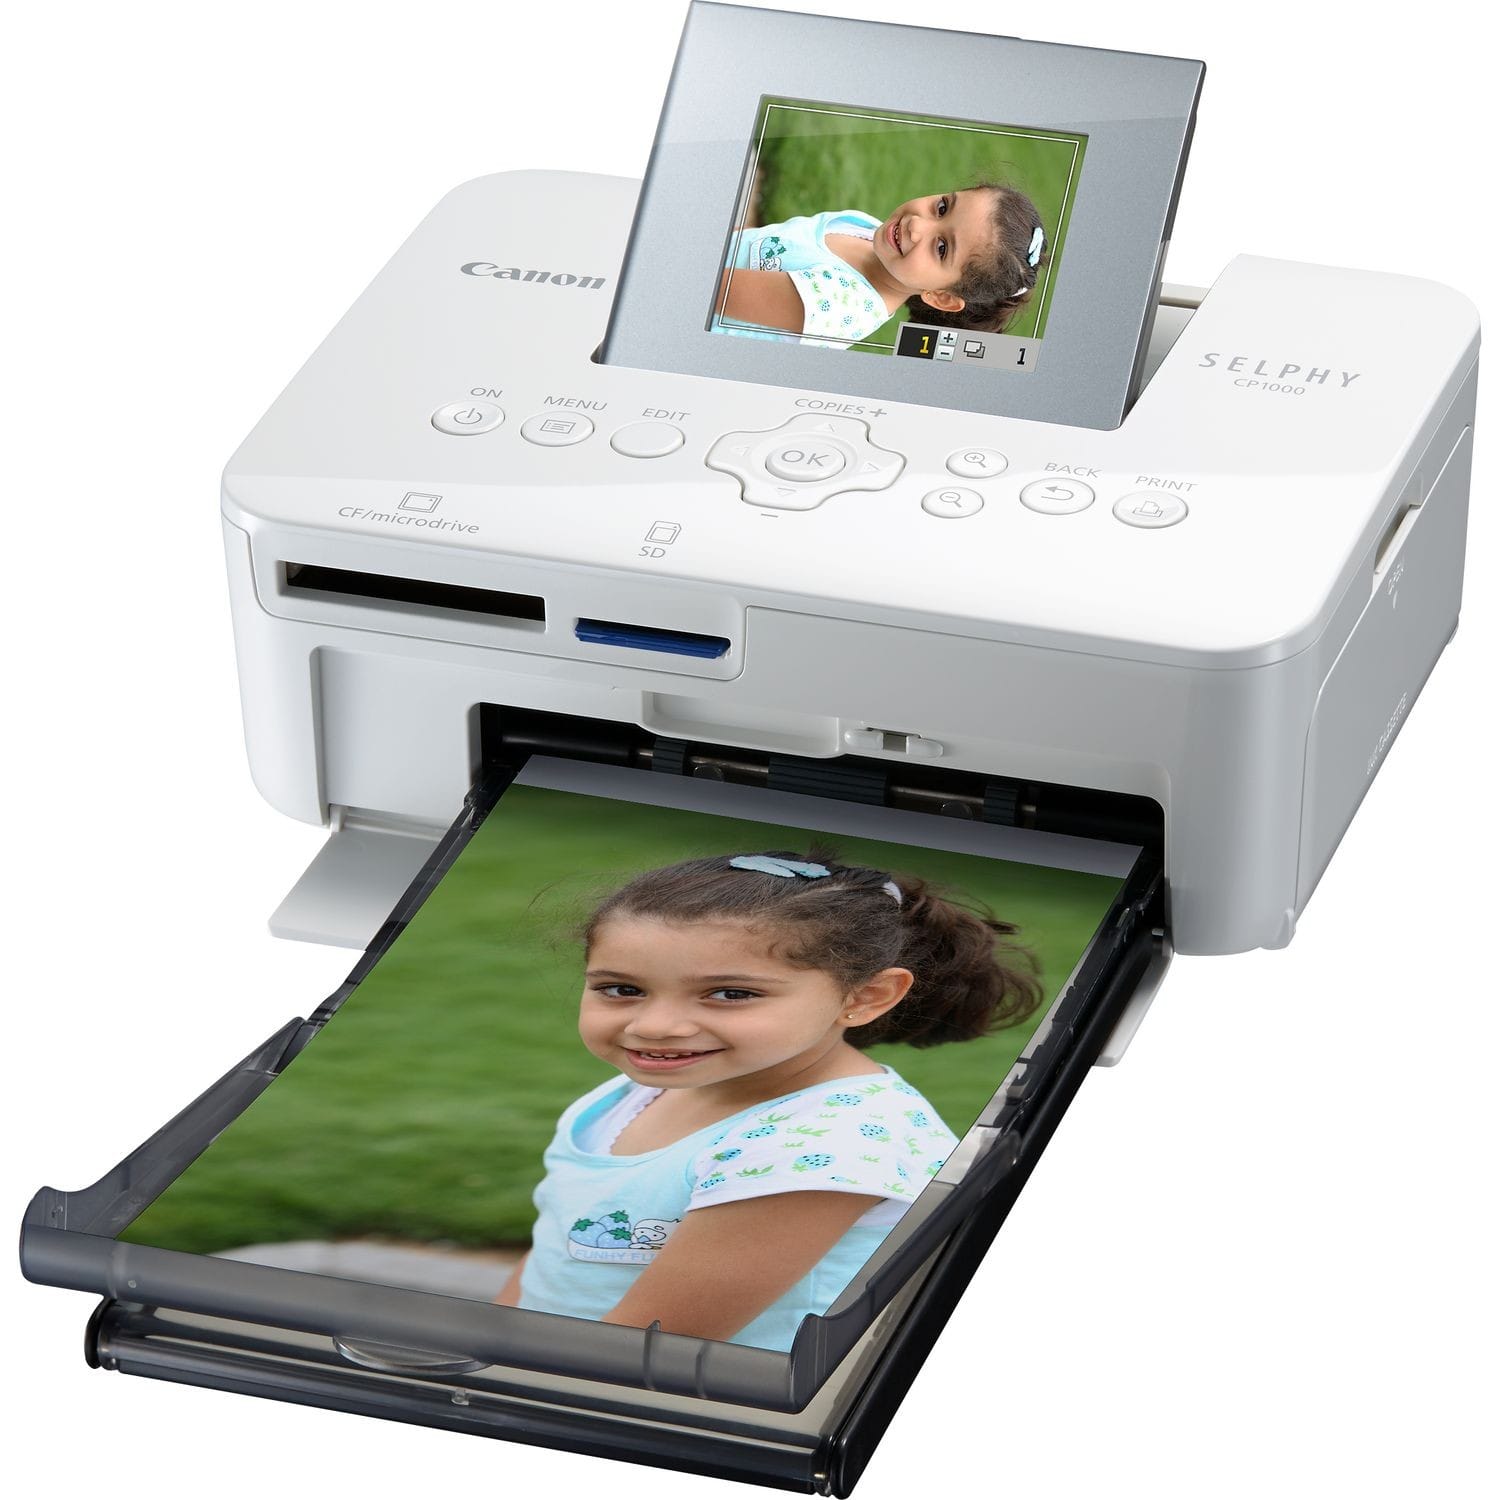 Meilleure imprimante photo portable : laquelle choisir ?